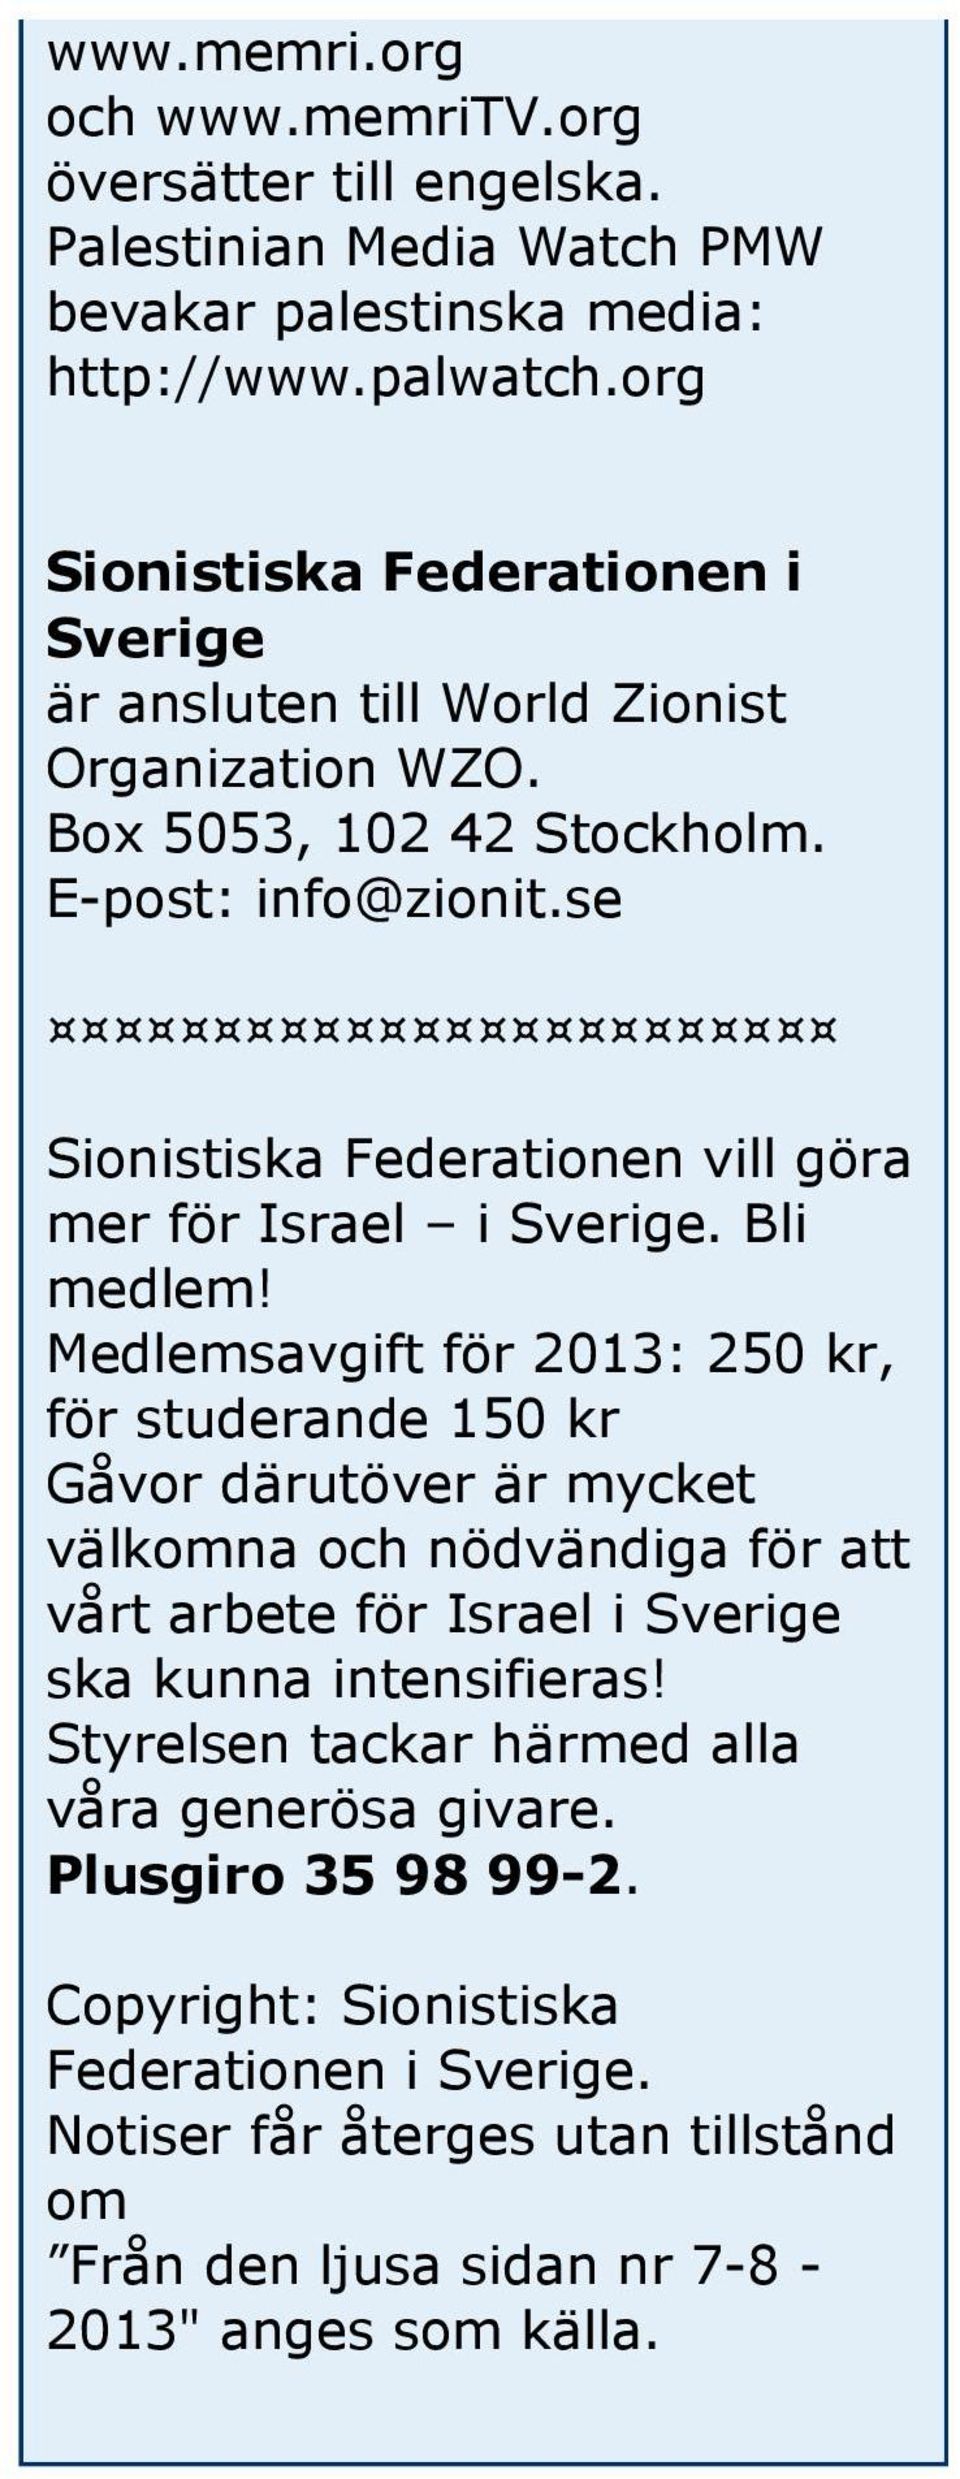 se Sionistiska Federationen vill göra mer för Israel i Sverige. Bli medlem!